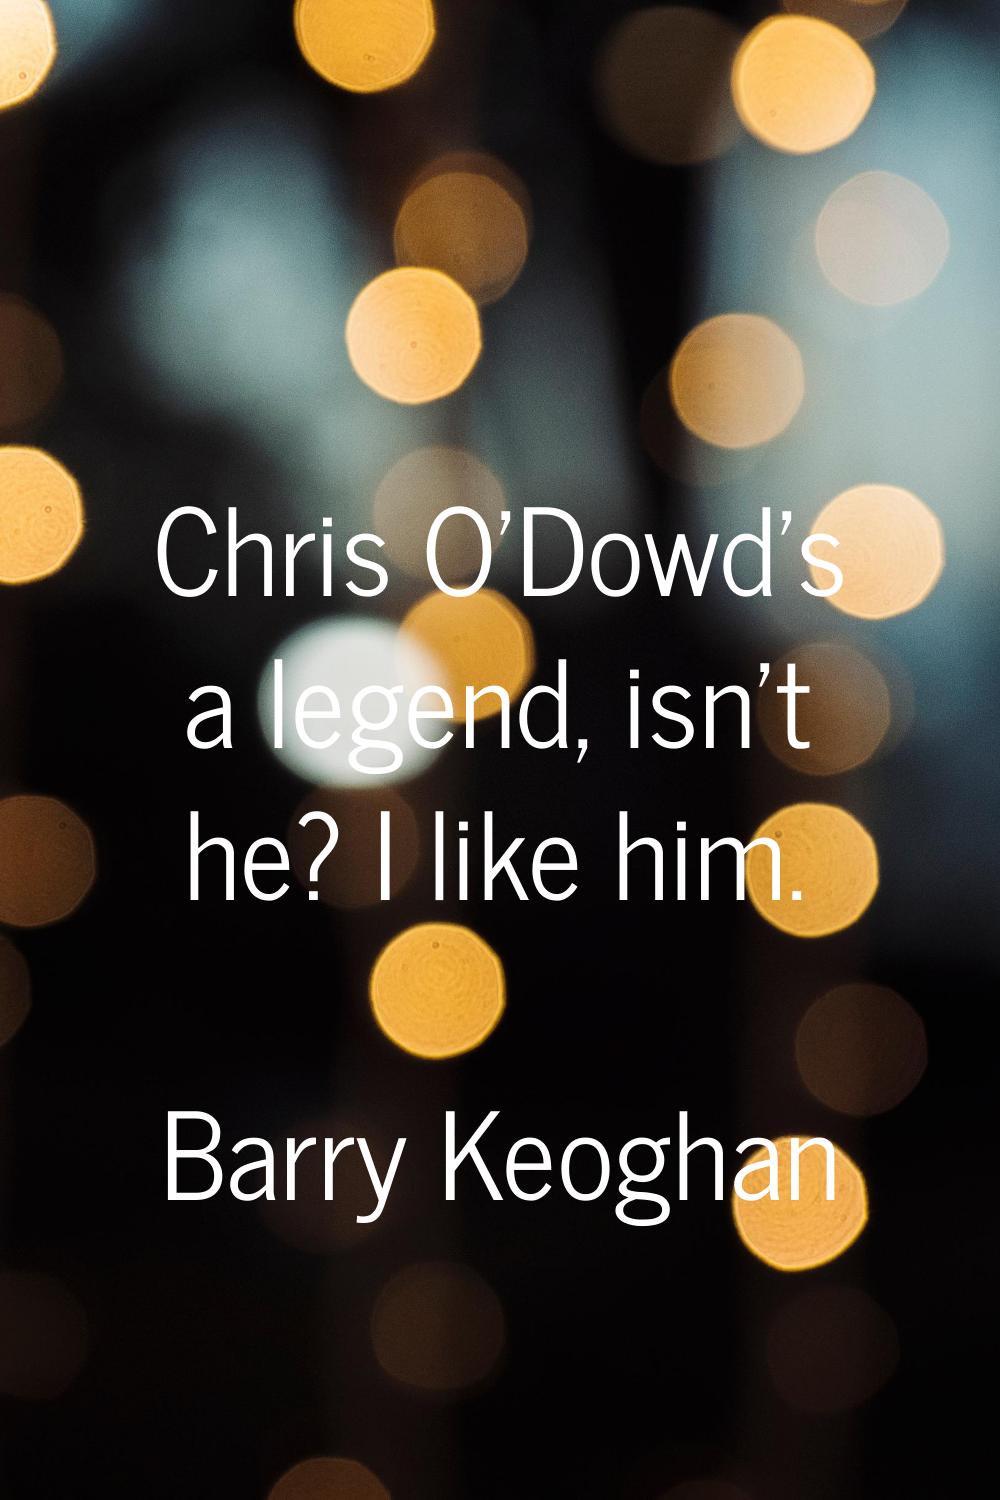 Chris O'Dowd's a legend, isn't he? I like him.